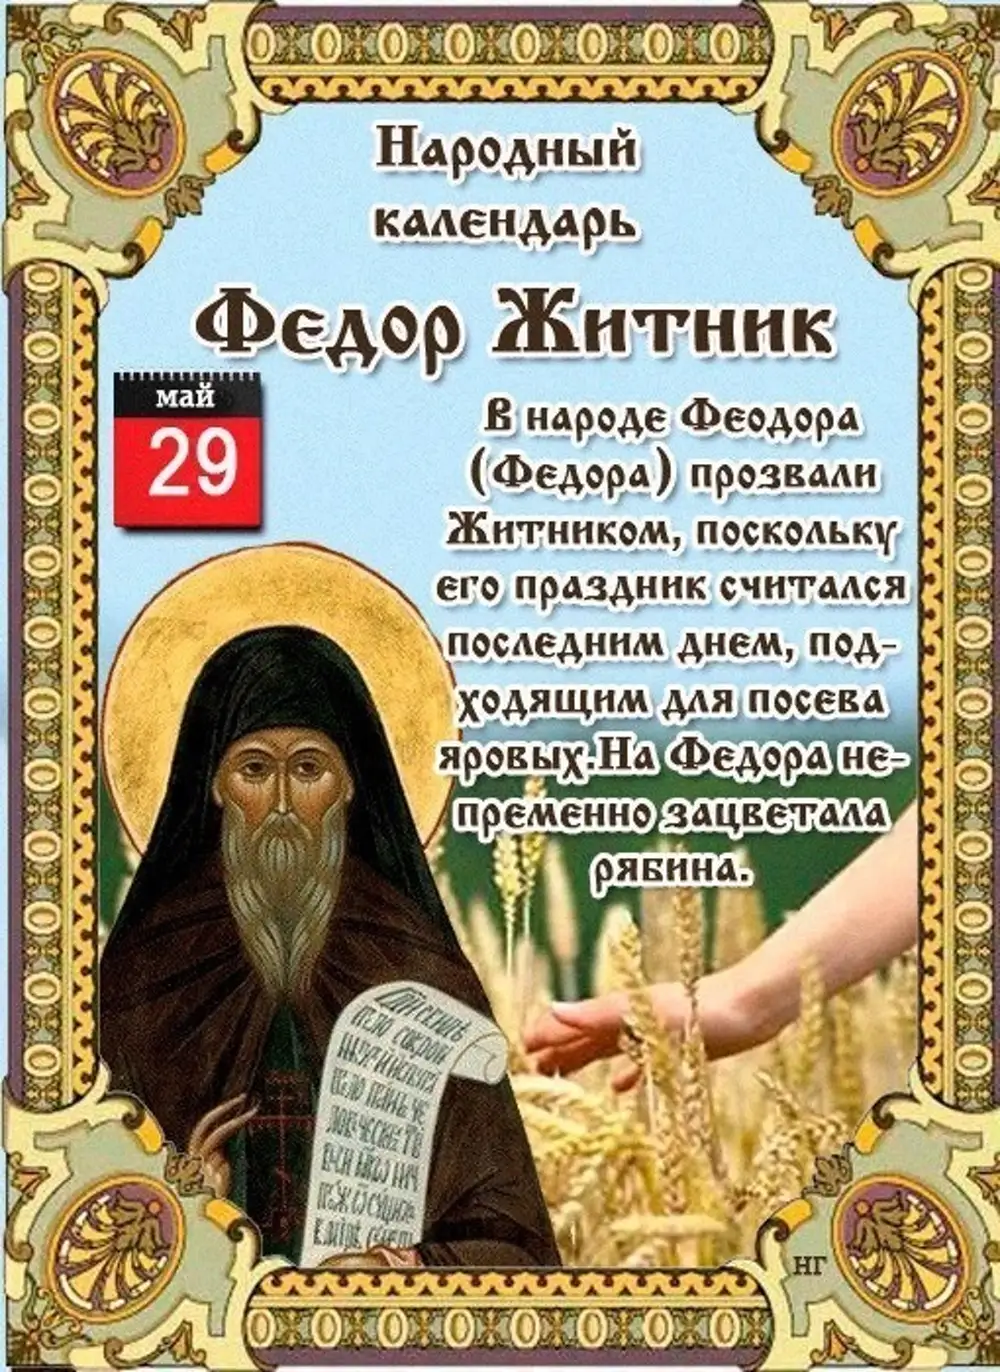 Православные святые сегодняшнего дня. 29 Мая день Федора Житника. 29 Мая народный календарь.